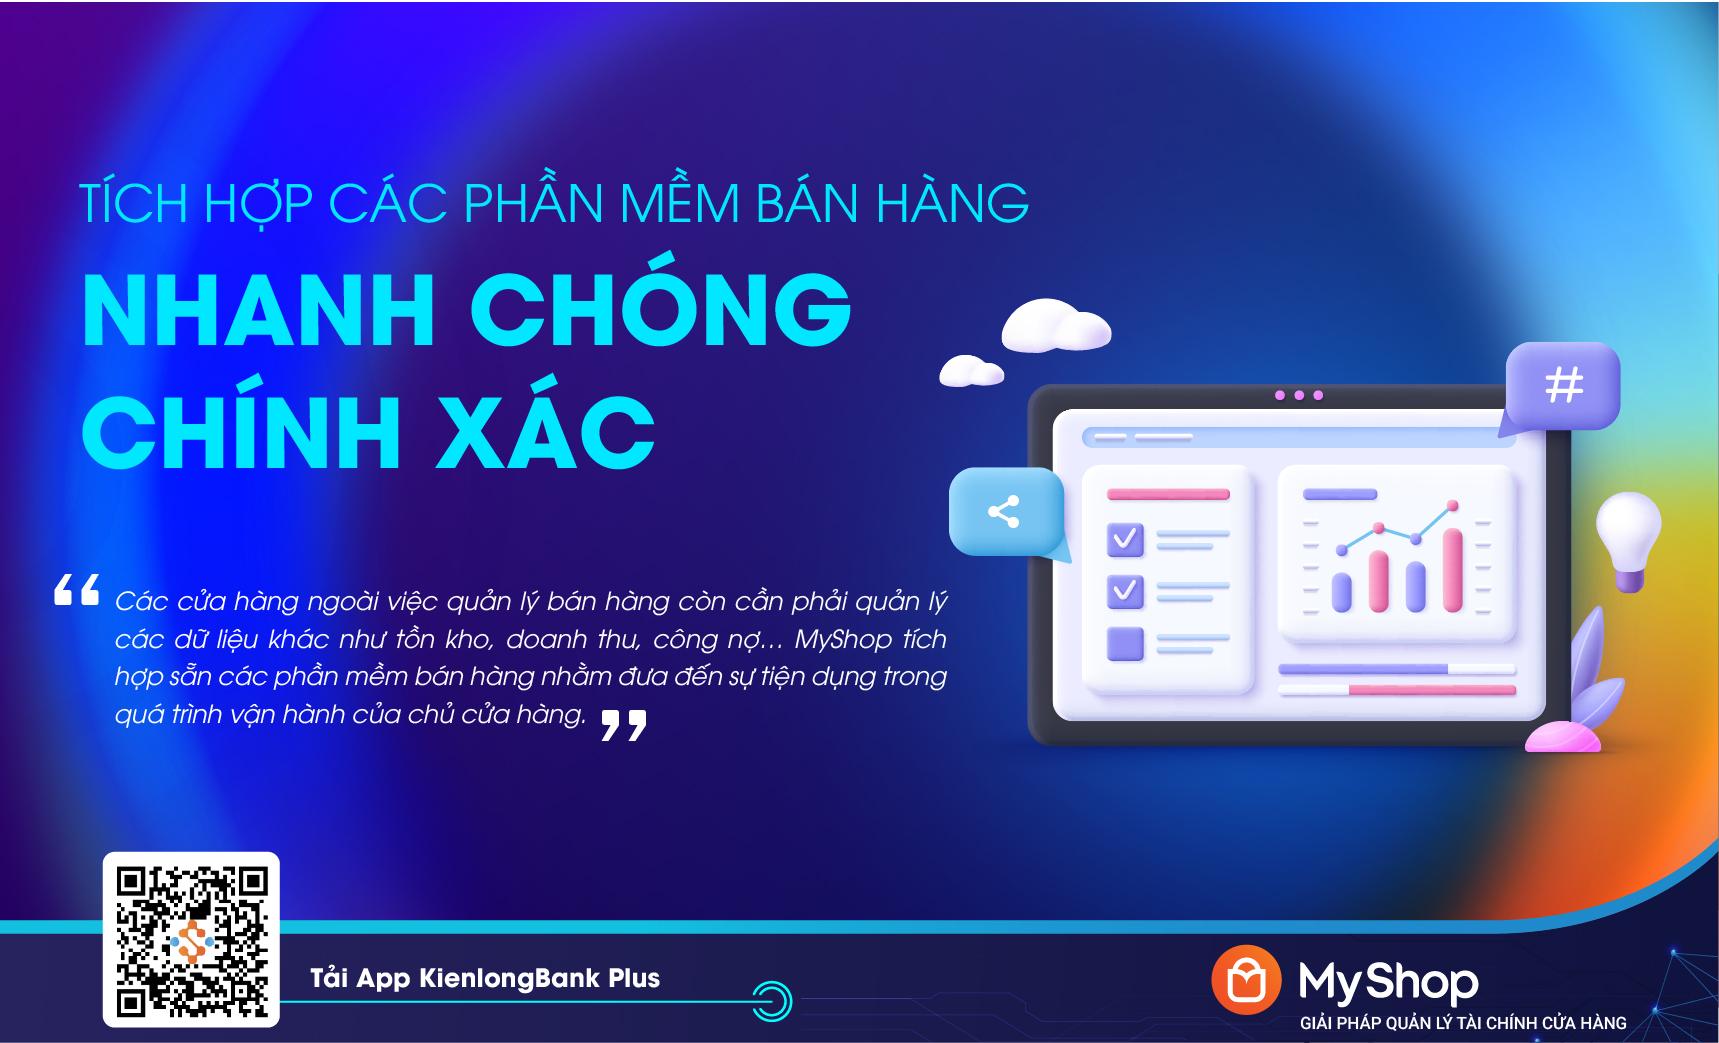 KienlongBank ra mắt MyShop: Quản lý tài chính ưu việt cho chủ cửa hàng bán lẻ - Ảnh 4.